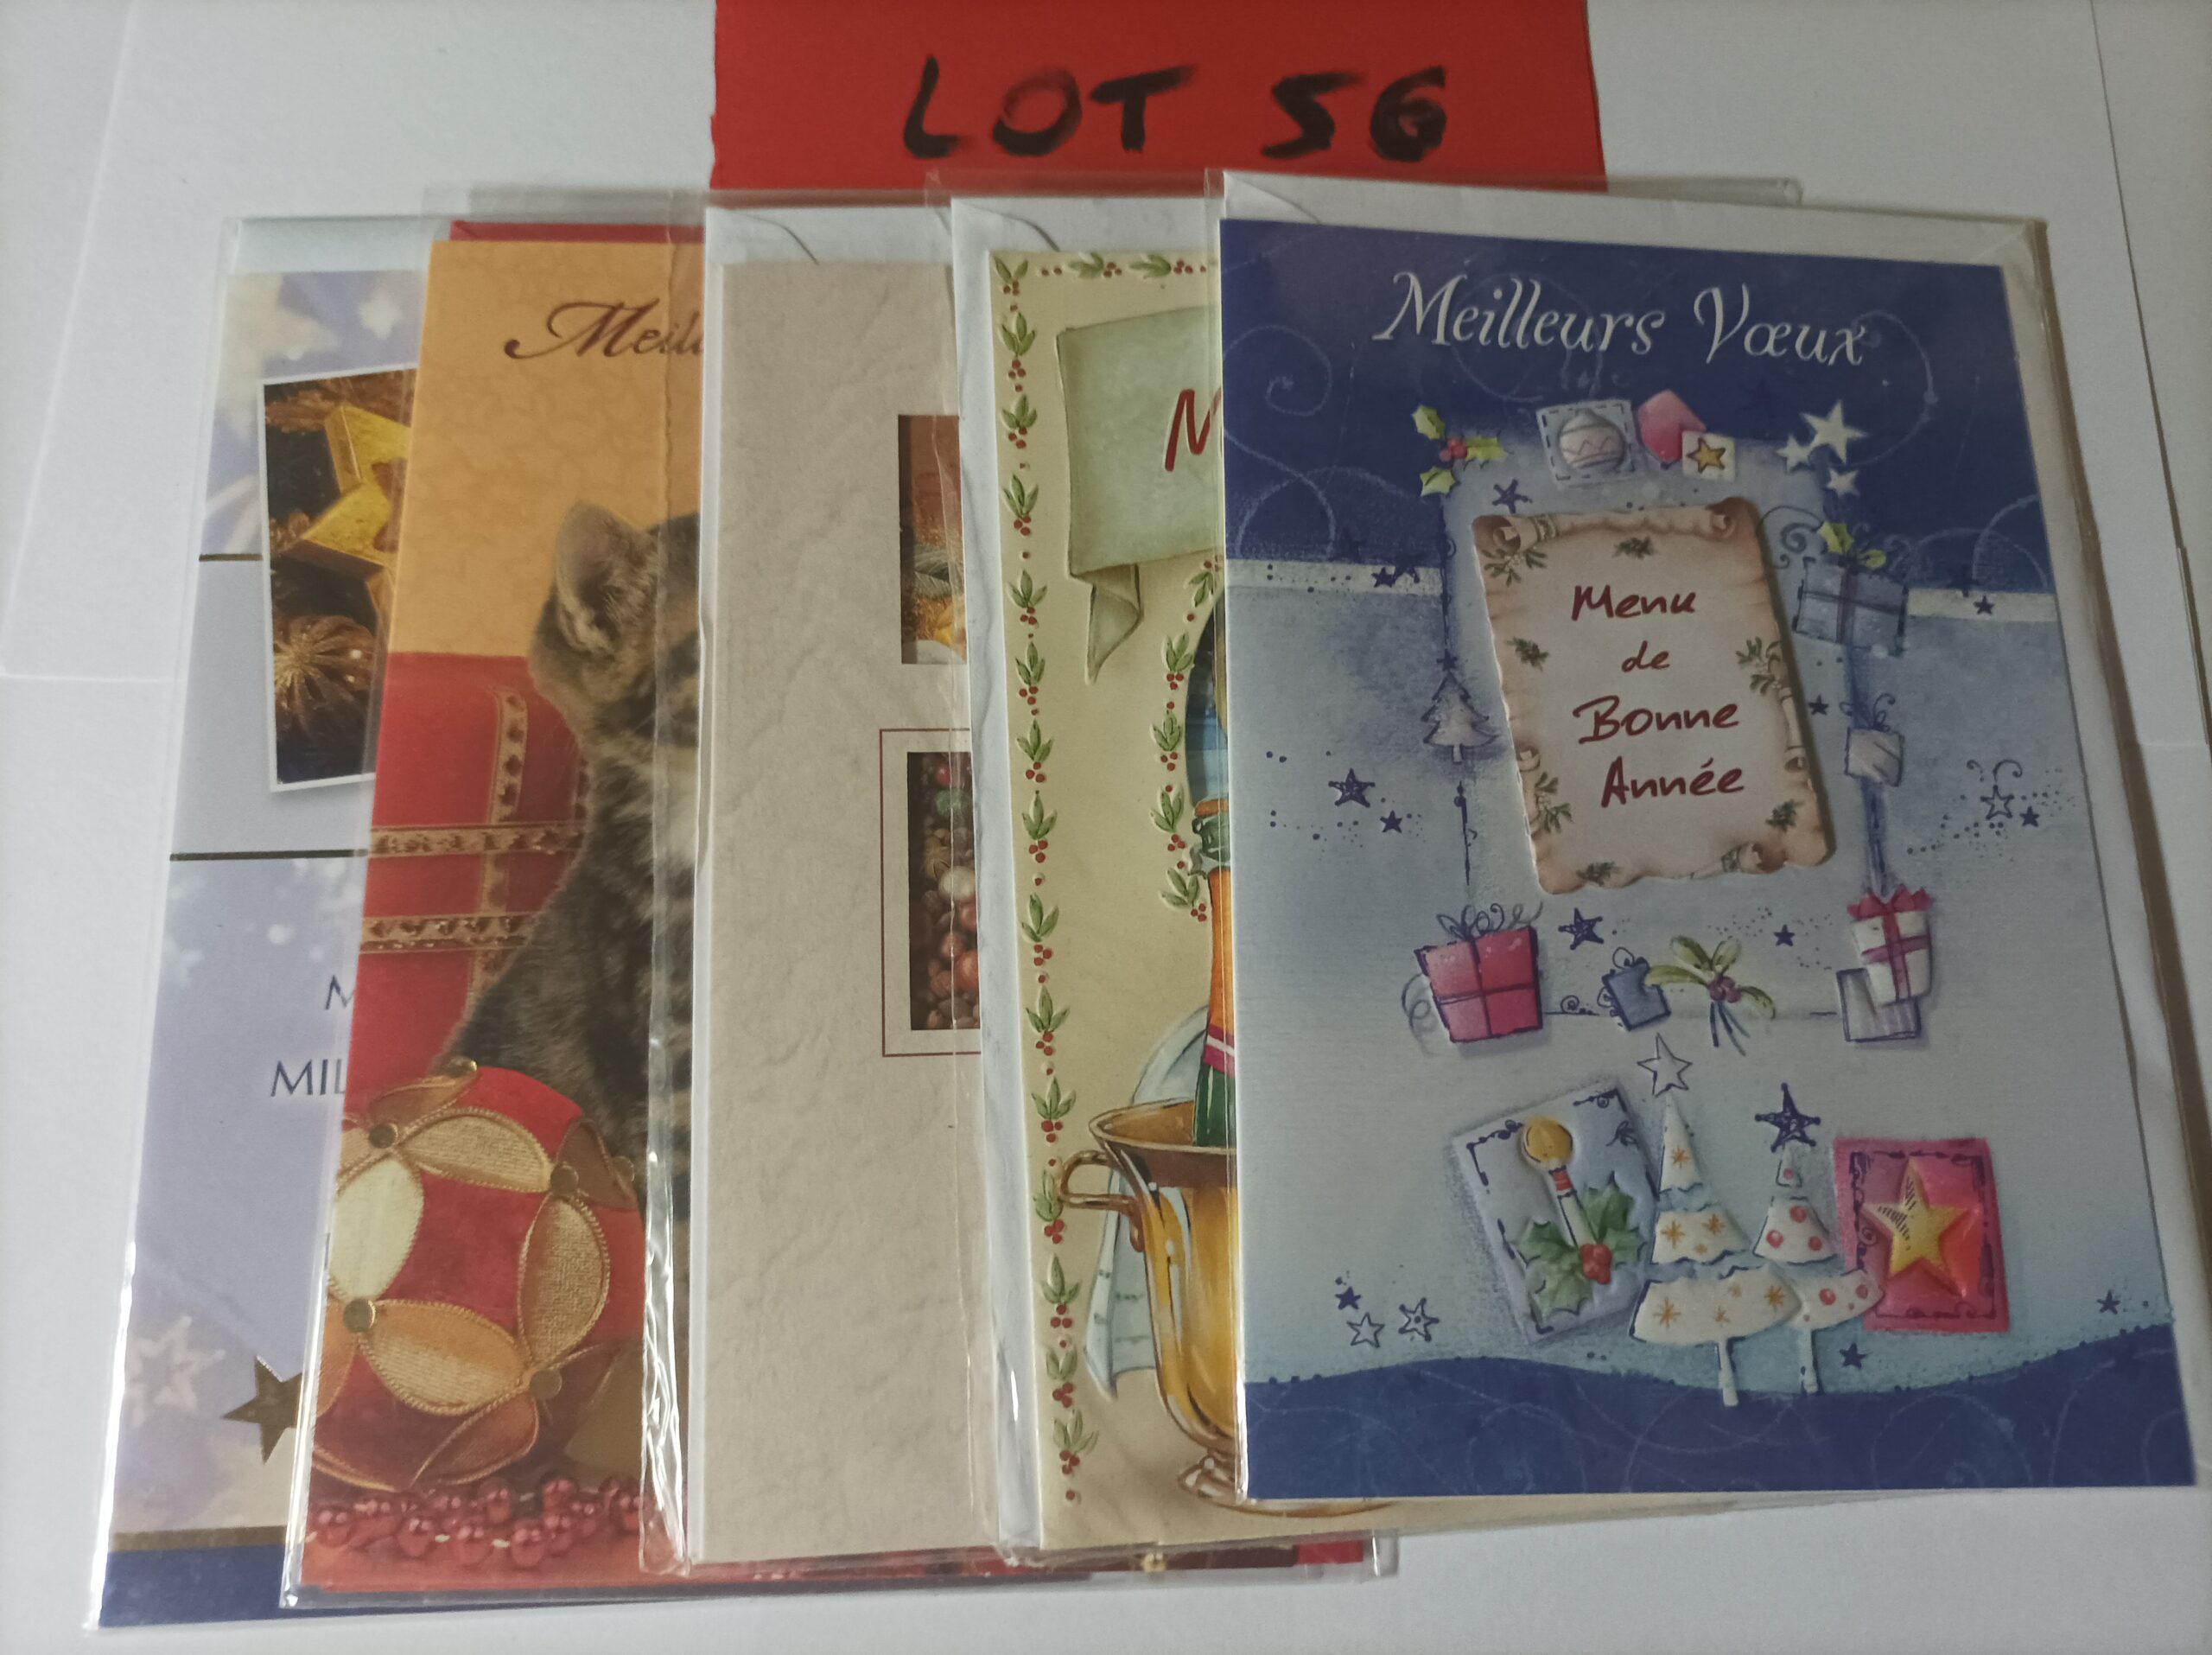 Lot de 5 cartes postales doubles avec enveloppes meilleurs vœux (lot 56)